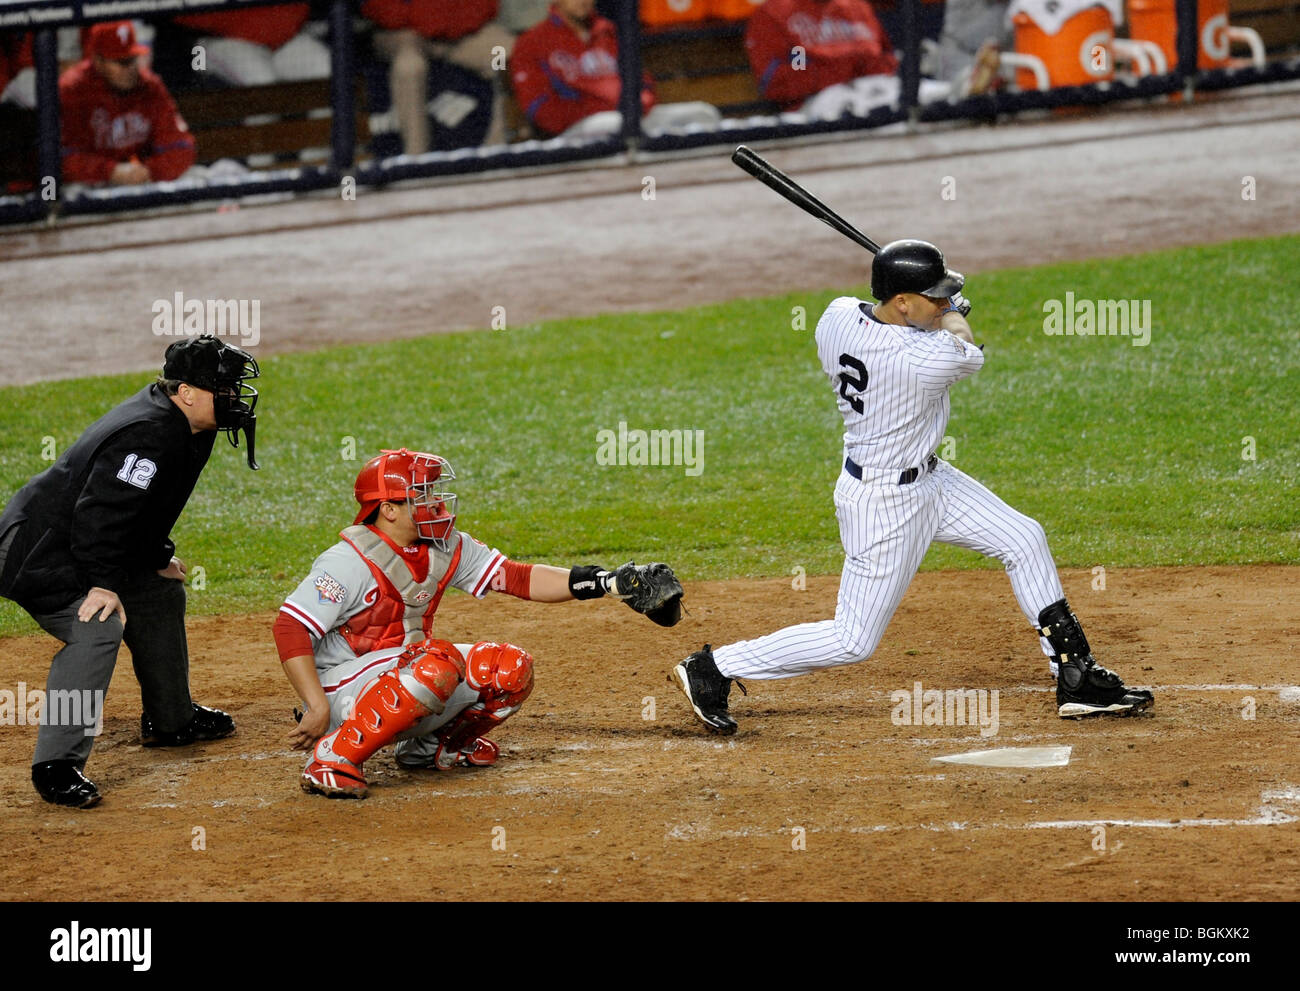 Derek Jeter # 2 de la Nouvelle York Yankee chauves-souris contre les Phillies de Philadelphie dans un jeu de la Série mondiale 2009 Banque D'Images